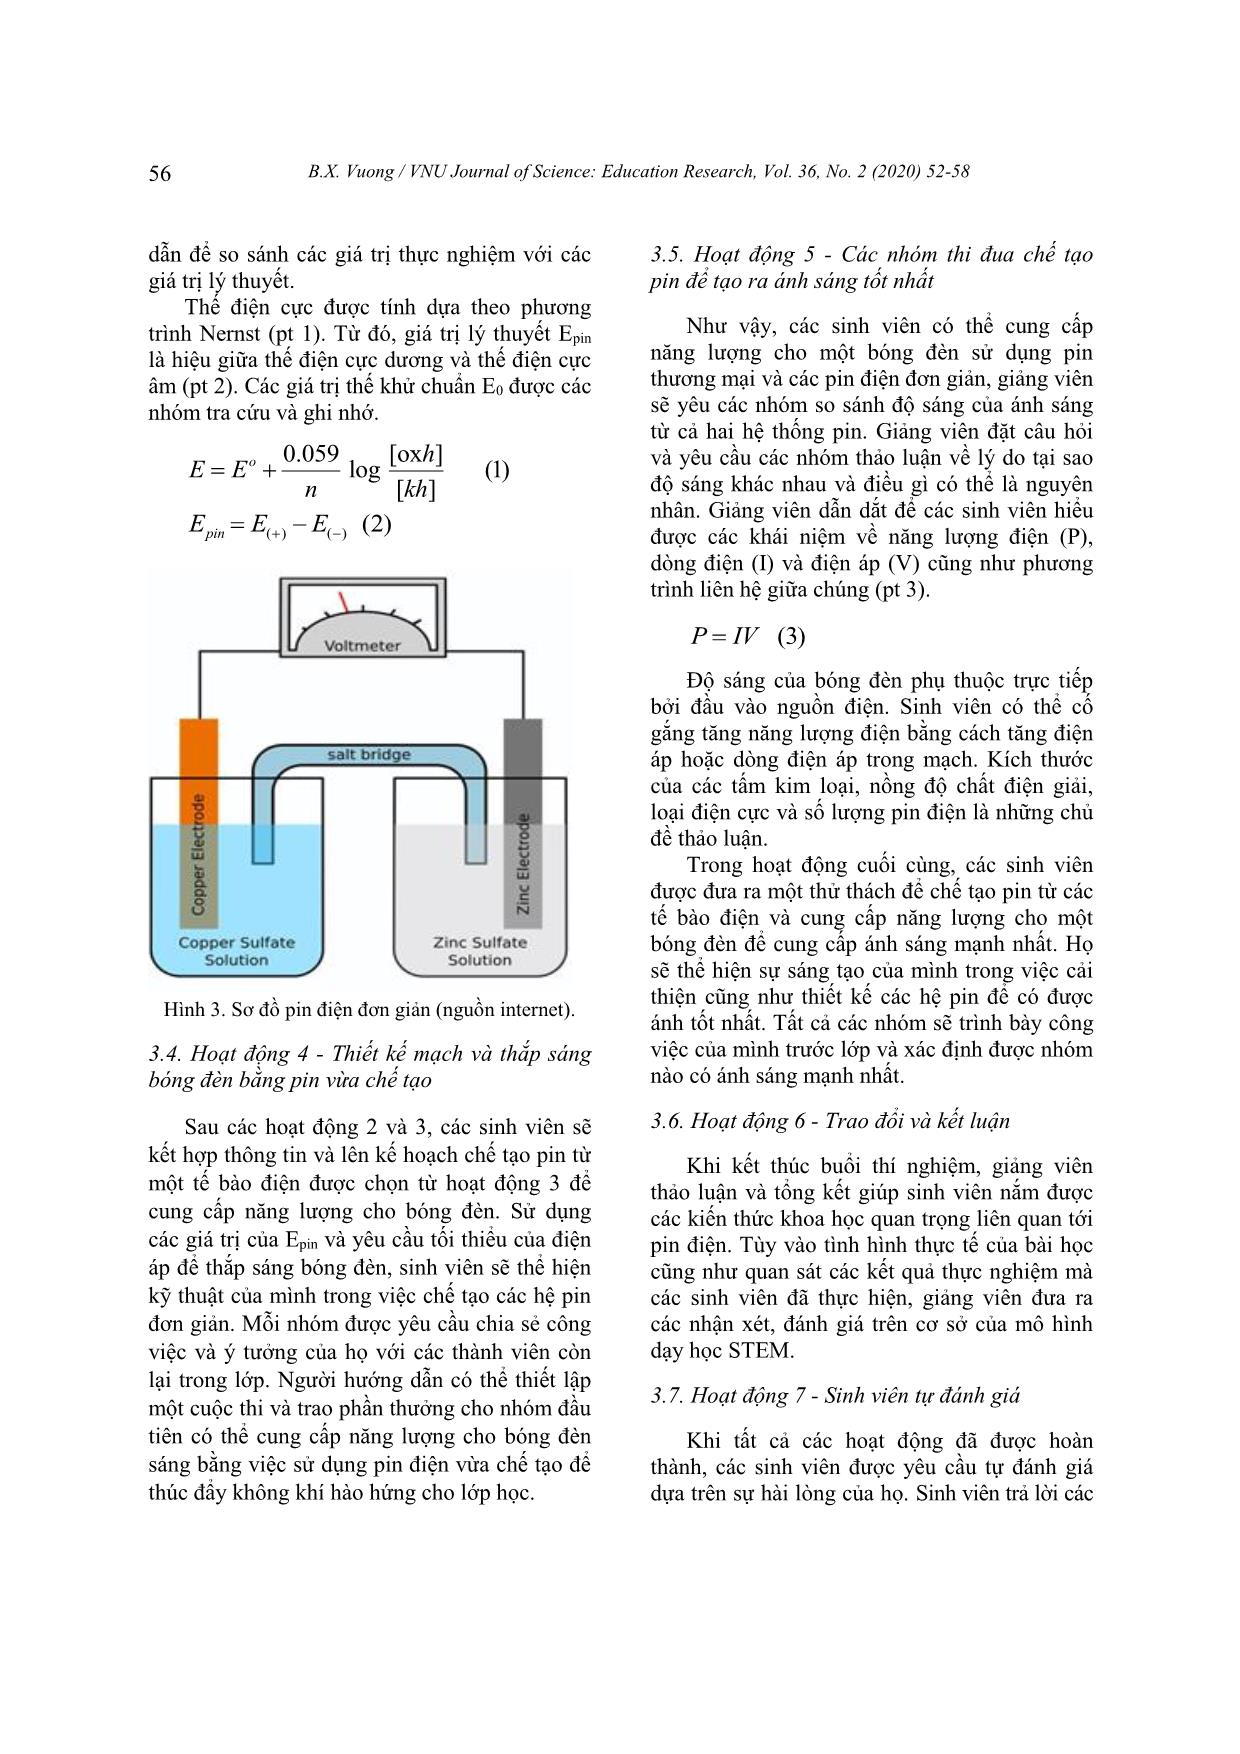 Chế tạo pin điện hóa trong phòng thí nghiệm theo mô hình dạy học STEM trang 5